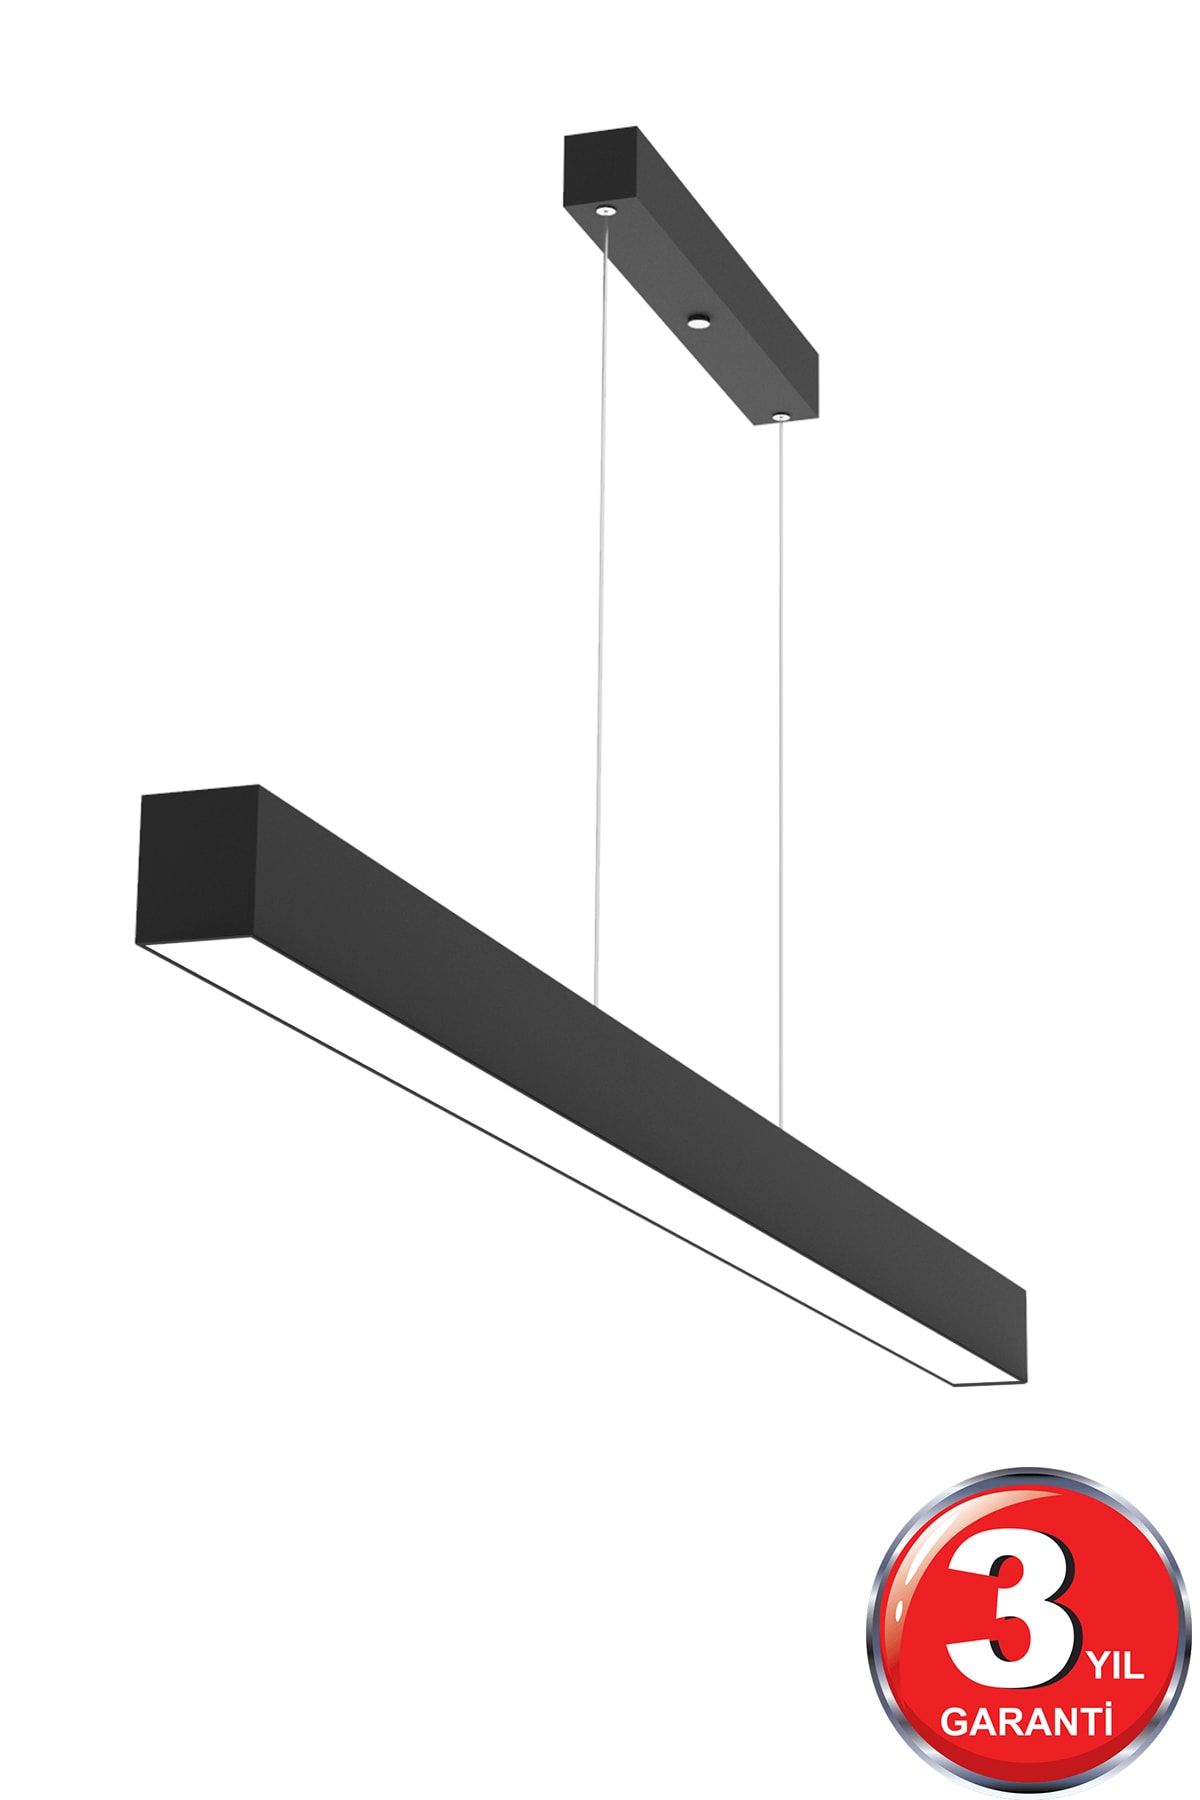 Hegza Lighting Lineer 120cm ( Siyah Kasa, Gün Işığı ) Ledli Sarkıt Modern Led Avize, Salon, Mutfak, Lineer Avize